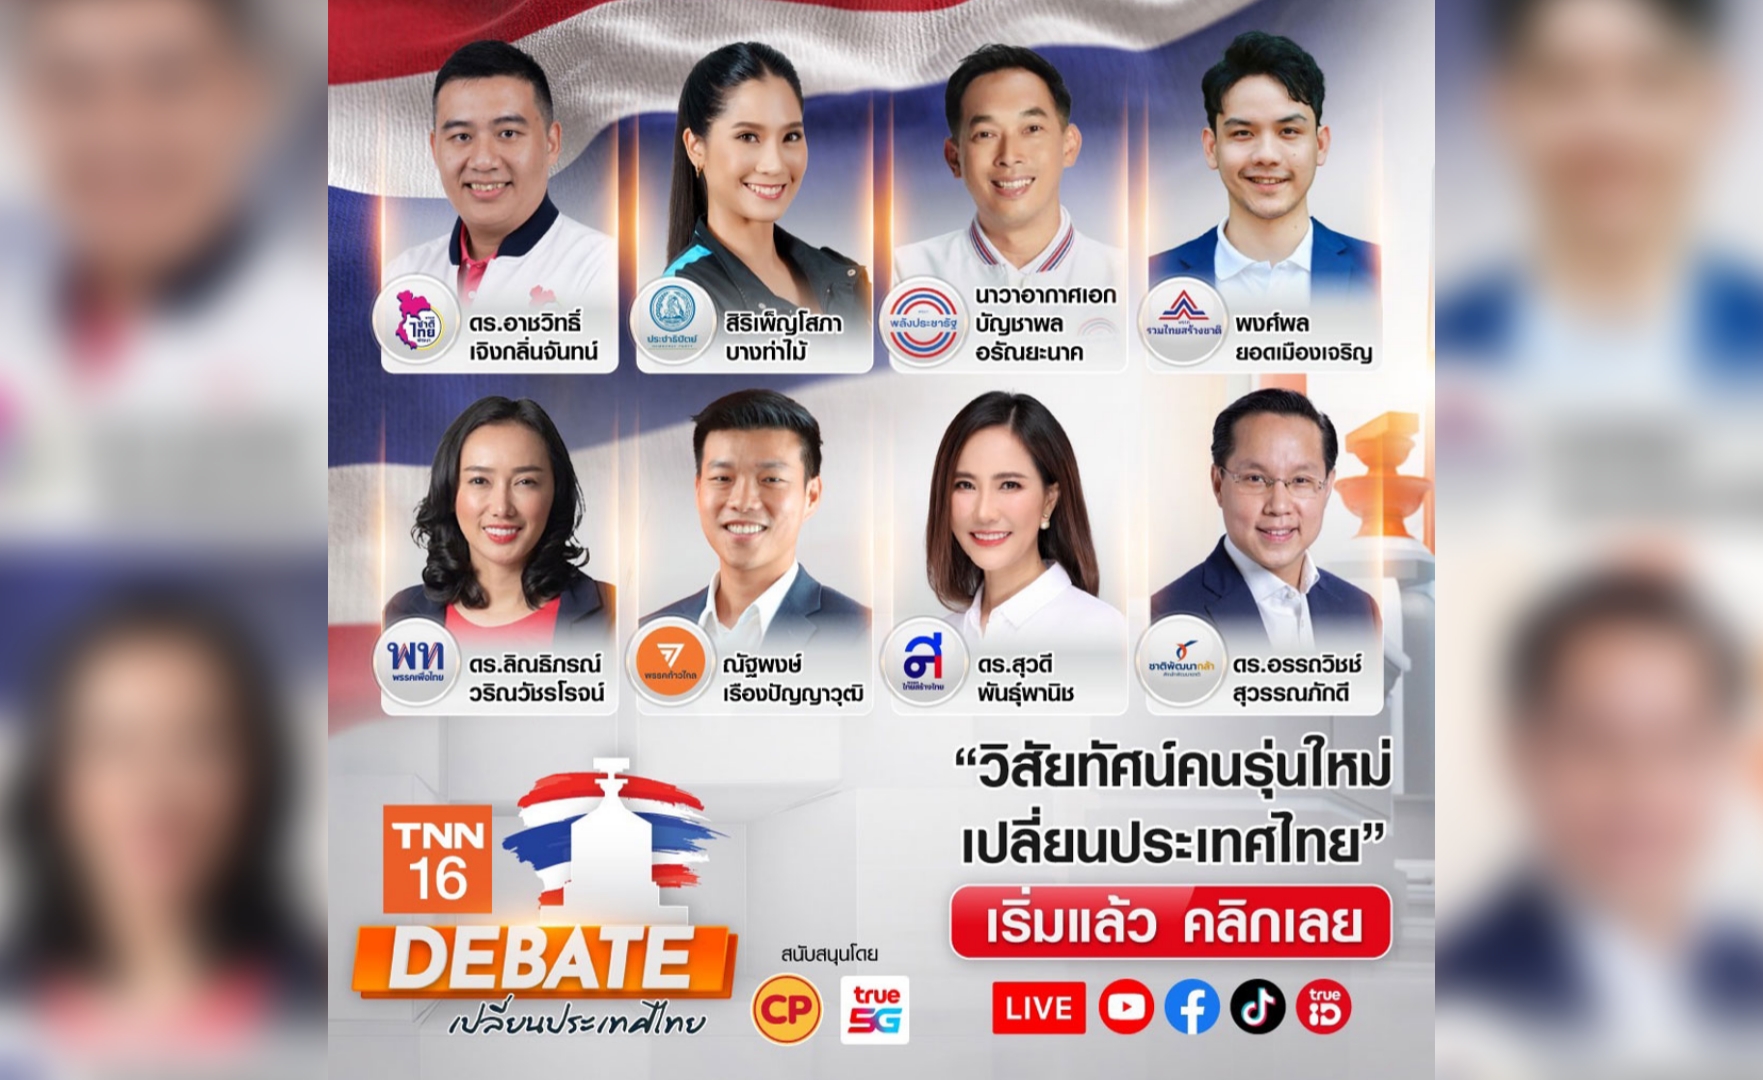 เริ่มแล้ว TNN ช่อง 16 จัดเวทีประชันนโยบายนักการเมืองรุ่นใหม่ ความหวังคนไทยทั้งชาติ